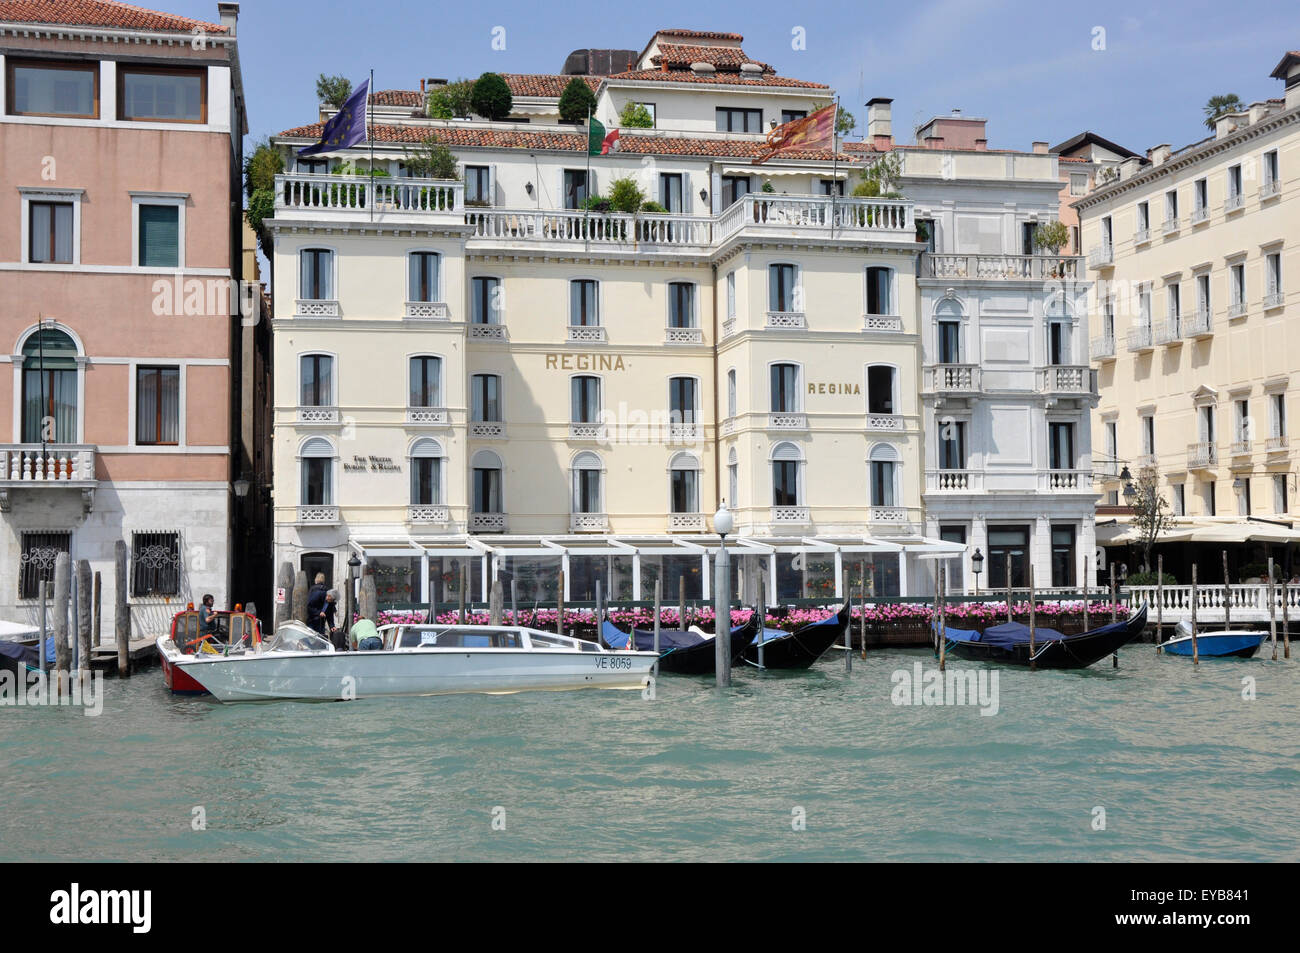 Italia - Venezia - sul Canale Grande - San Marco regione- Regina hotel di lusso - elegante facciata - Balconi - flower visualizza Foto Stock